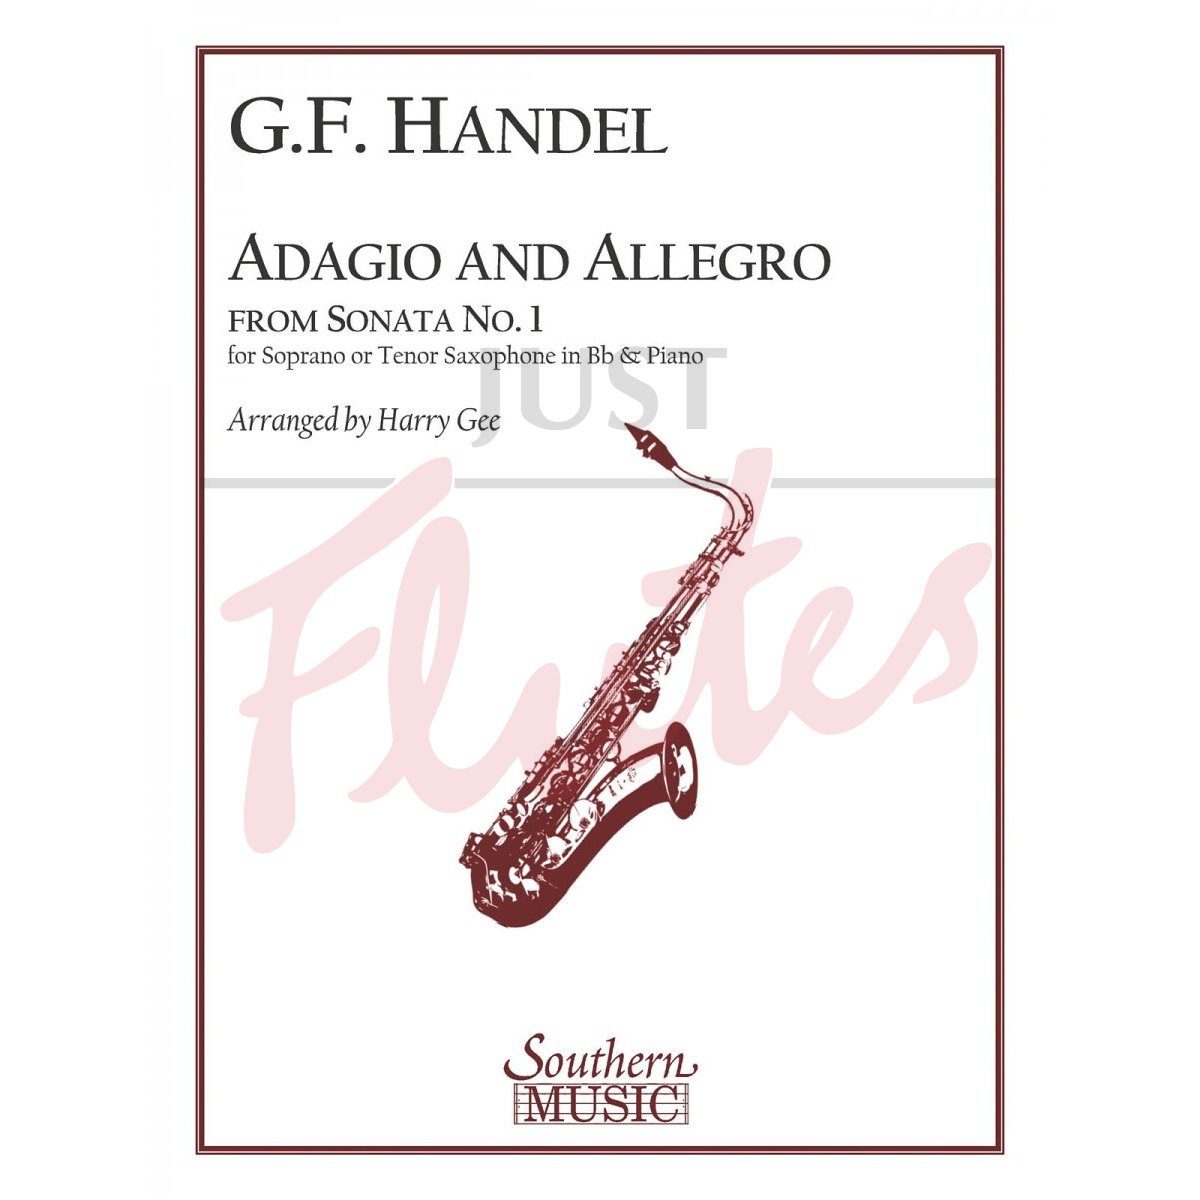 Adagio and Allegro from Sonata No 1